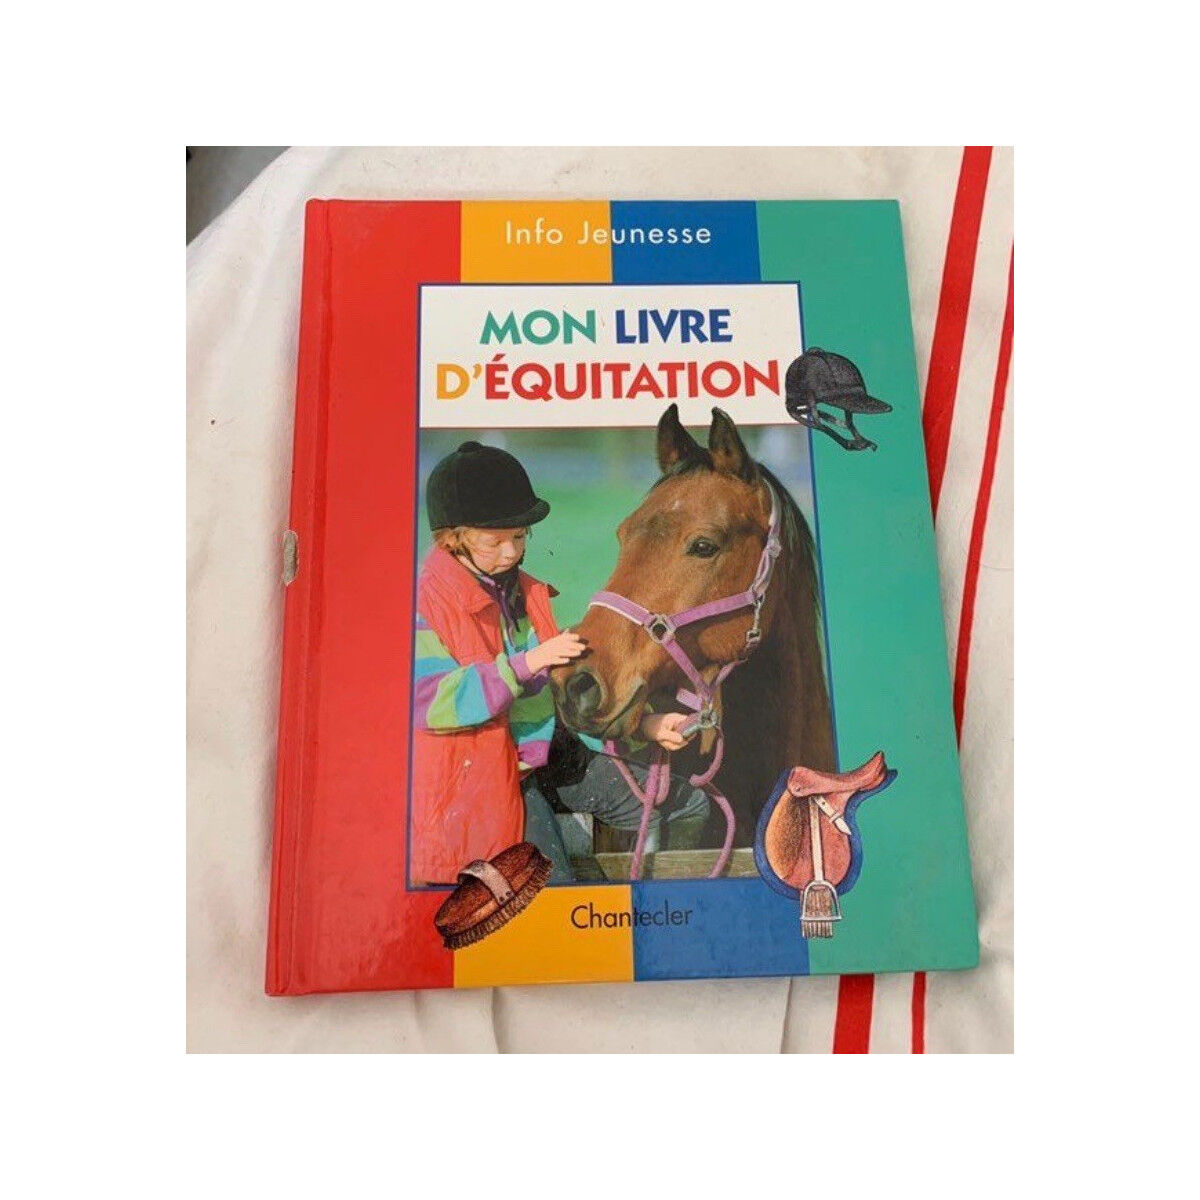 Mon livre d'équitation